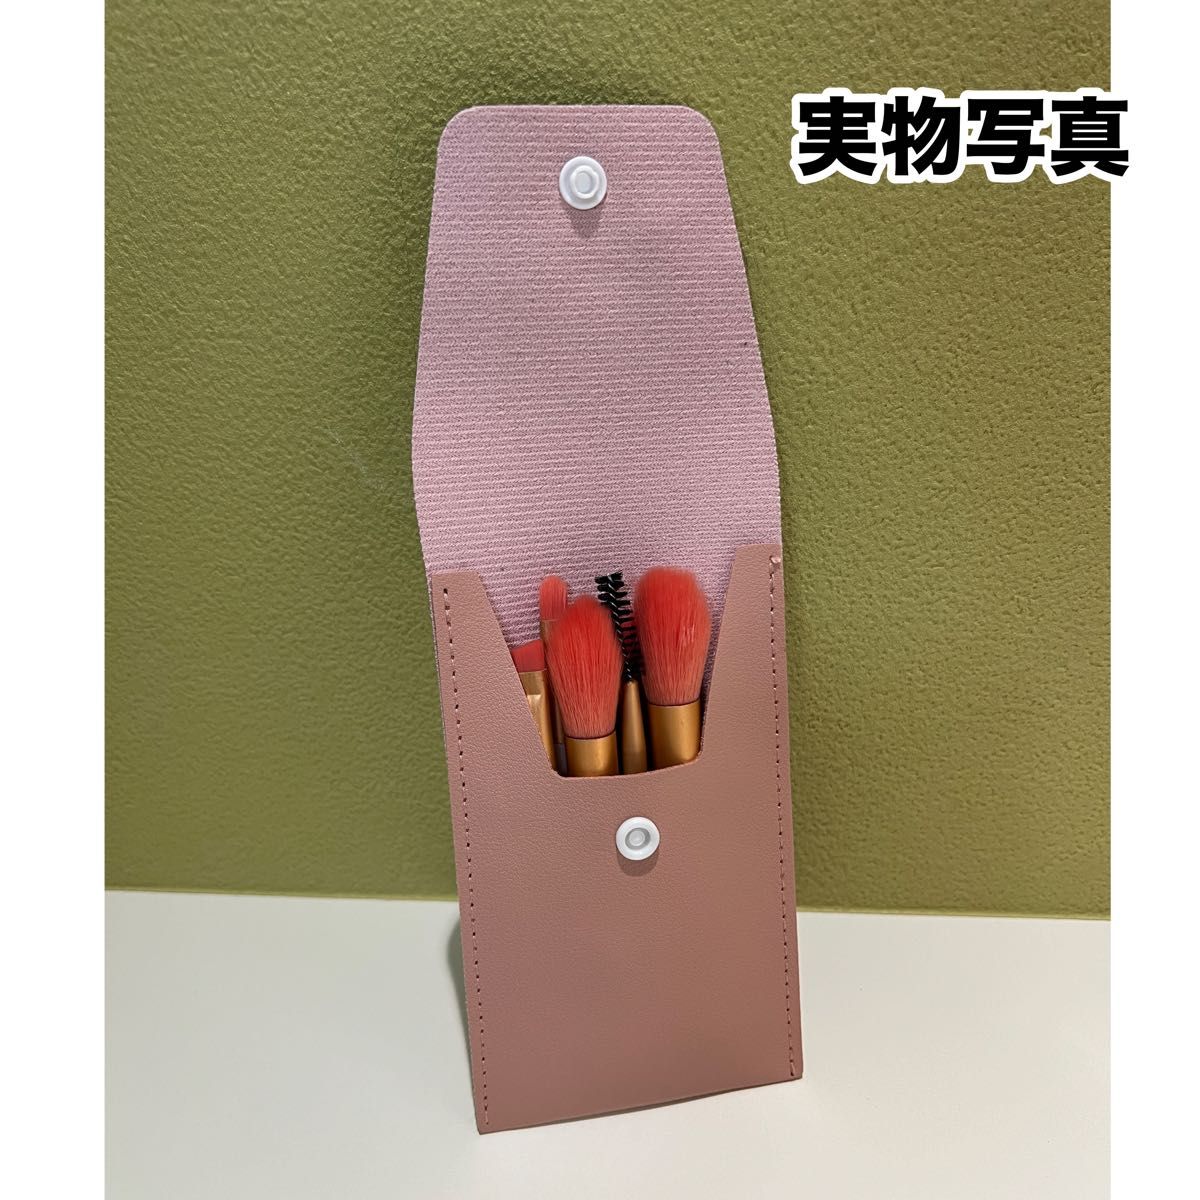 メイクブラシ 8本セット ポーチ付き アイメイク フェイス ブラシ 韓国 ピンク